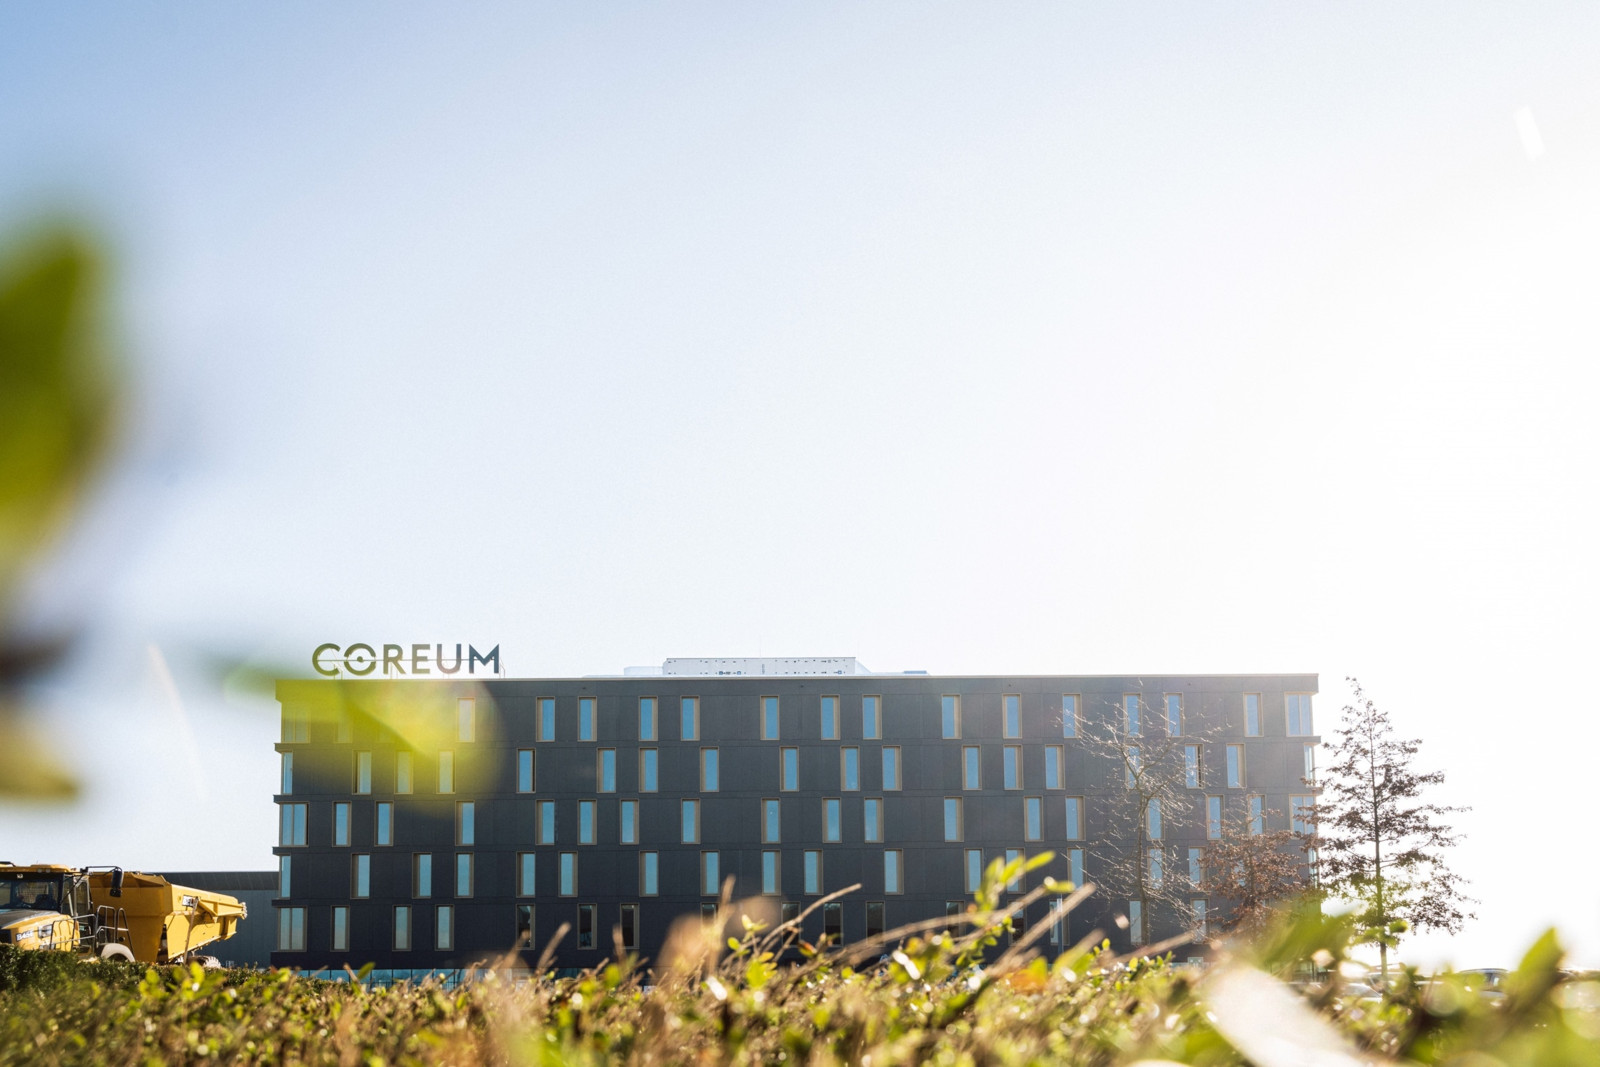 Teilnehmer brauchen keine weiten Wege zu fürchten. Das neu eröffnete Coreum Hotel liegt direkt am Konferenzgelände und lädt am Abend zu einem spannenden Rahmenprogramm ein.